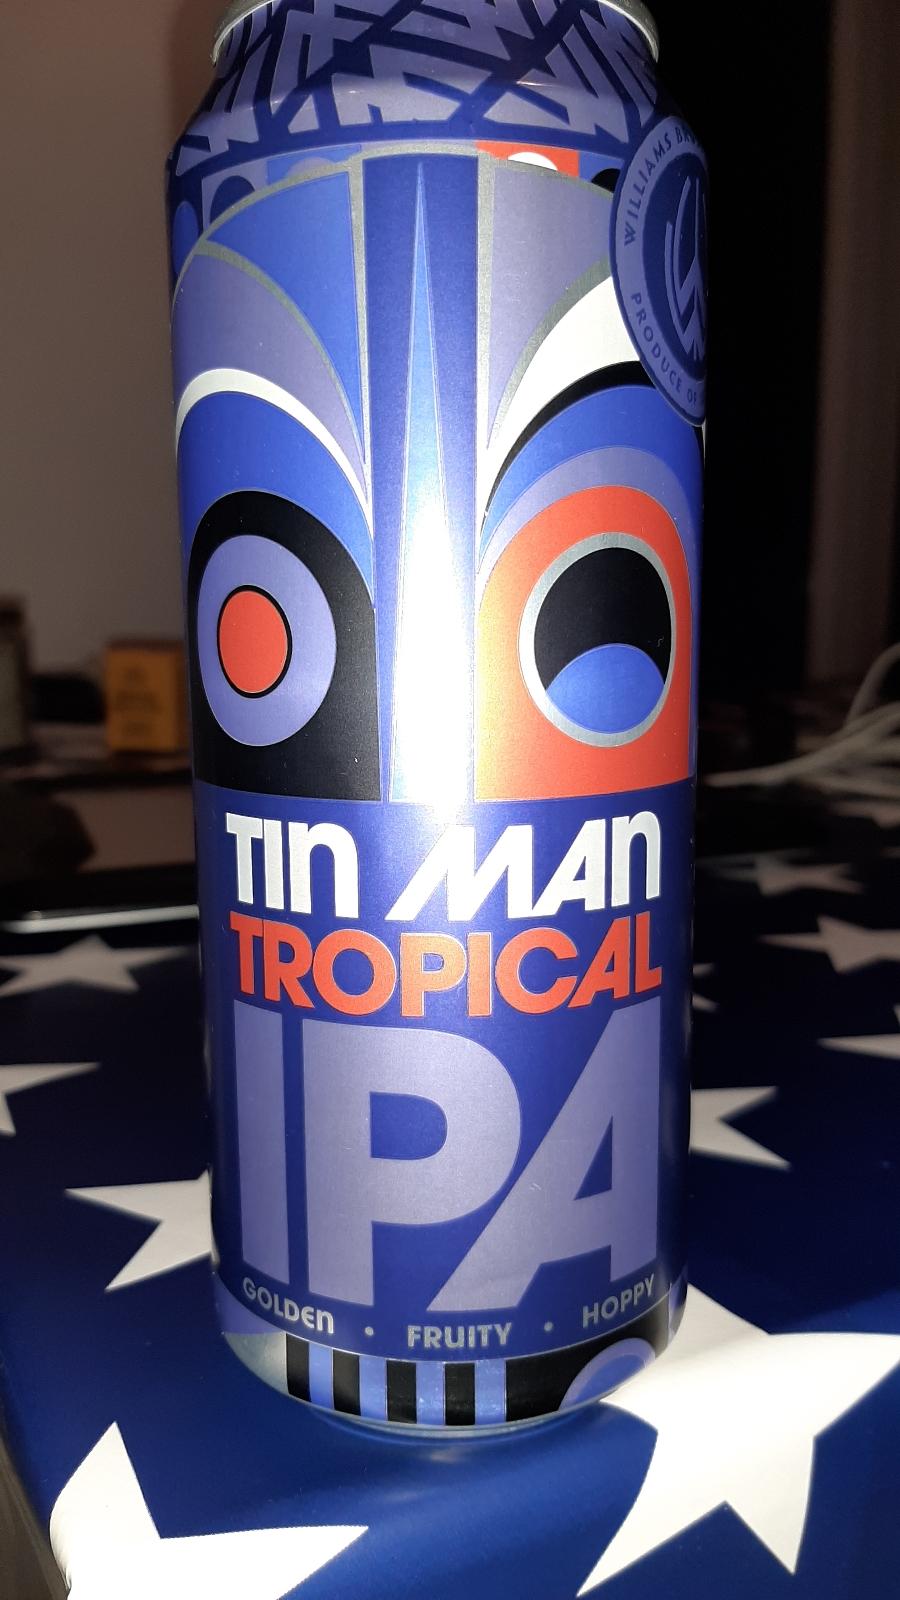 Tin Man Tropical 